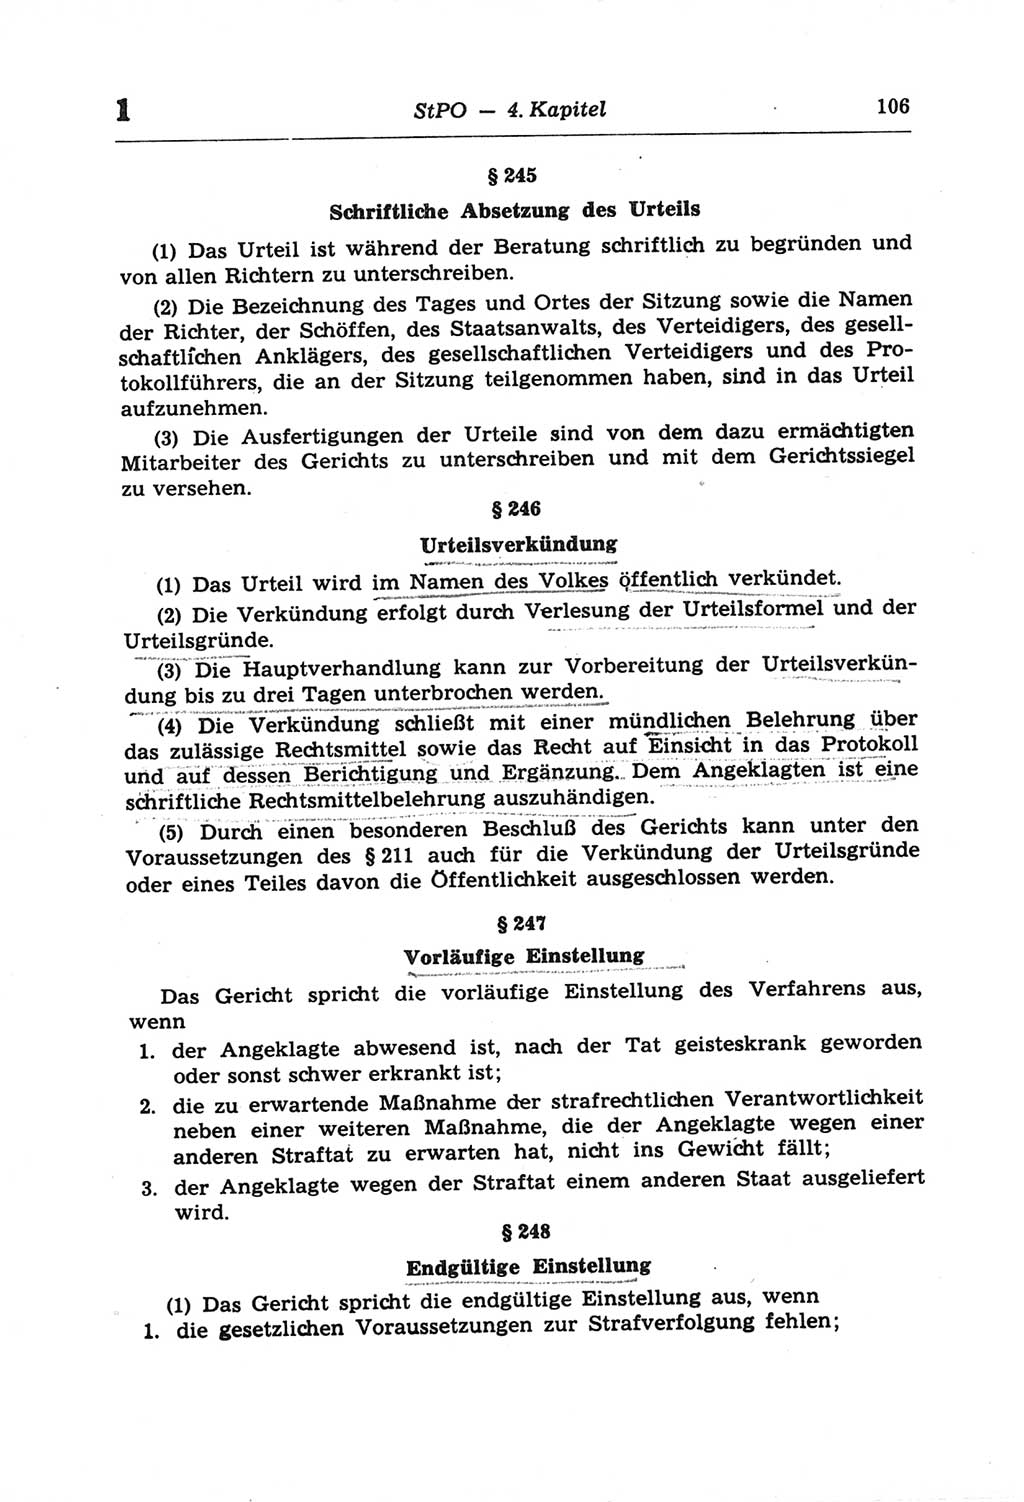 Strafprozeßordnung (StPO) der Deutschen Demokratischen Republik (DDR) und angrenzende Gesetze und Bestimmungen 1968, Seite 106 (StPO Ges. Bstgn. DDR 1968, S. 106)